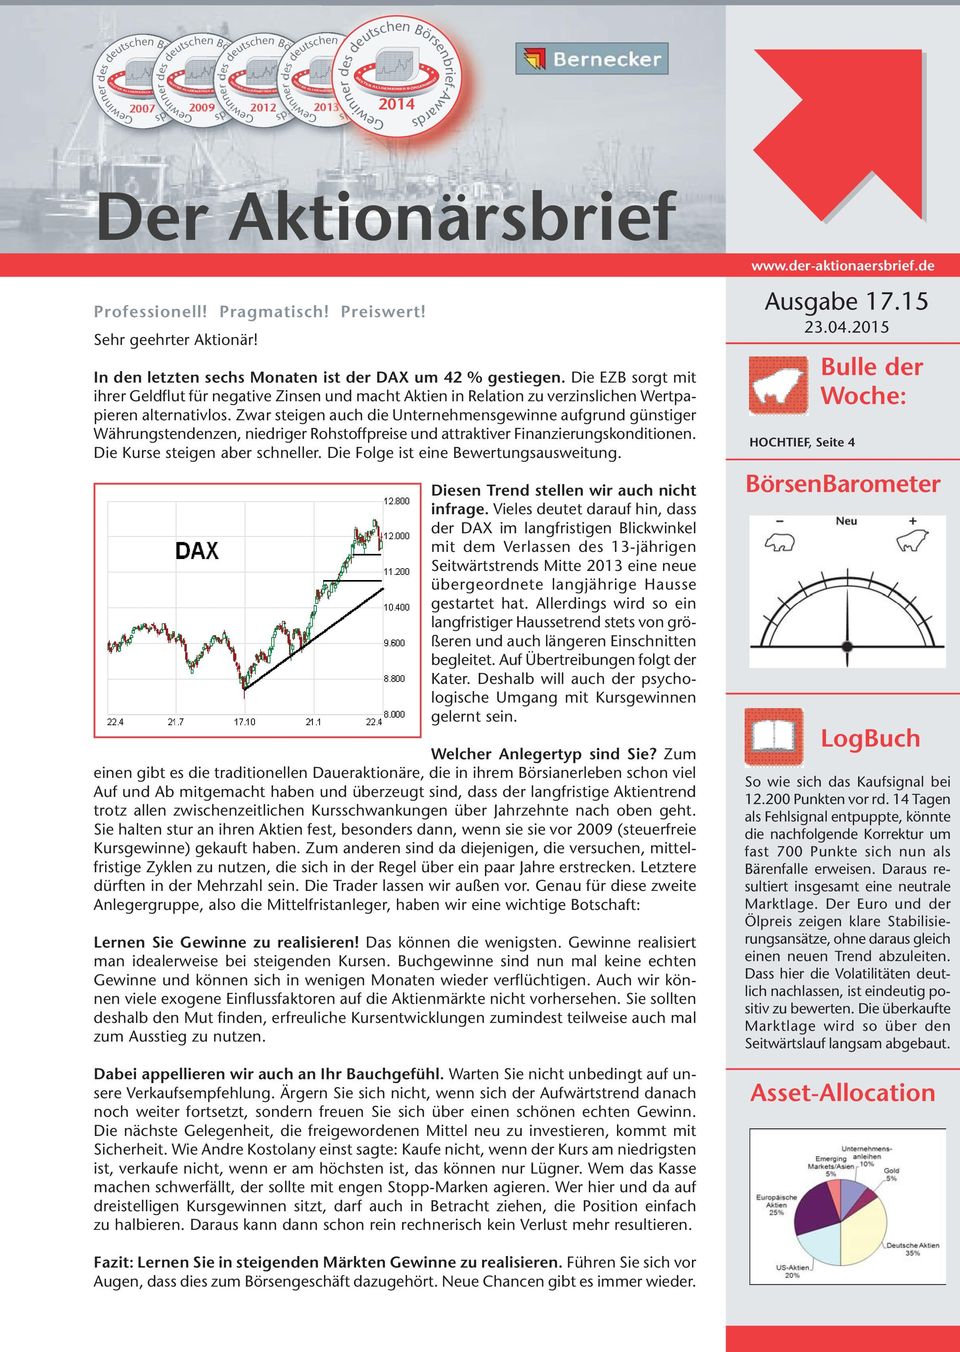 Sehr geehrter Aktionär! In den letzten sechs Monaten ist der DAX um 42 % gestiegen.